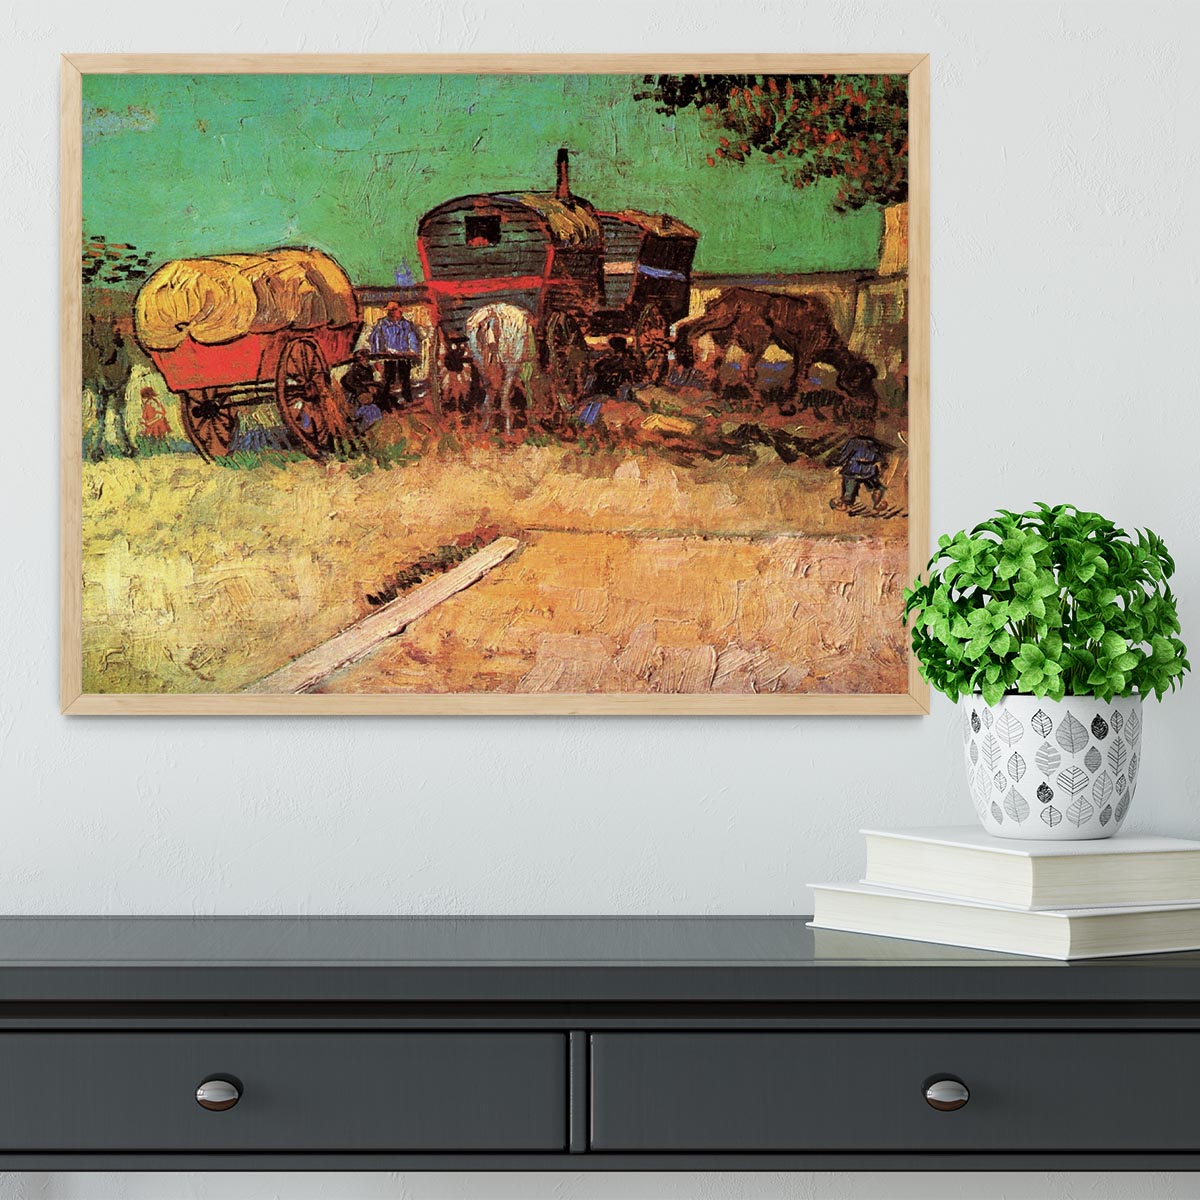 Encampment of Gypsies with Caravans by Van Gogh Framed Print - Canvas Art Rocks - 4